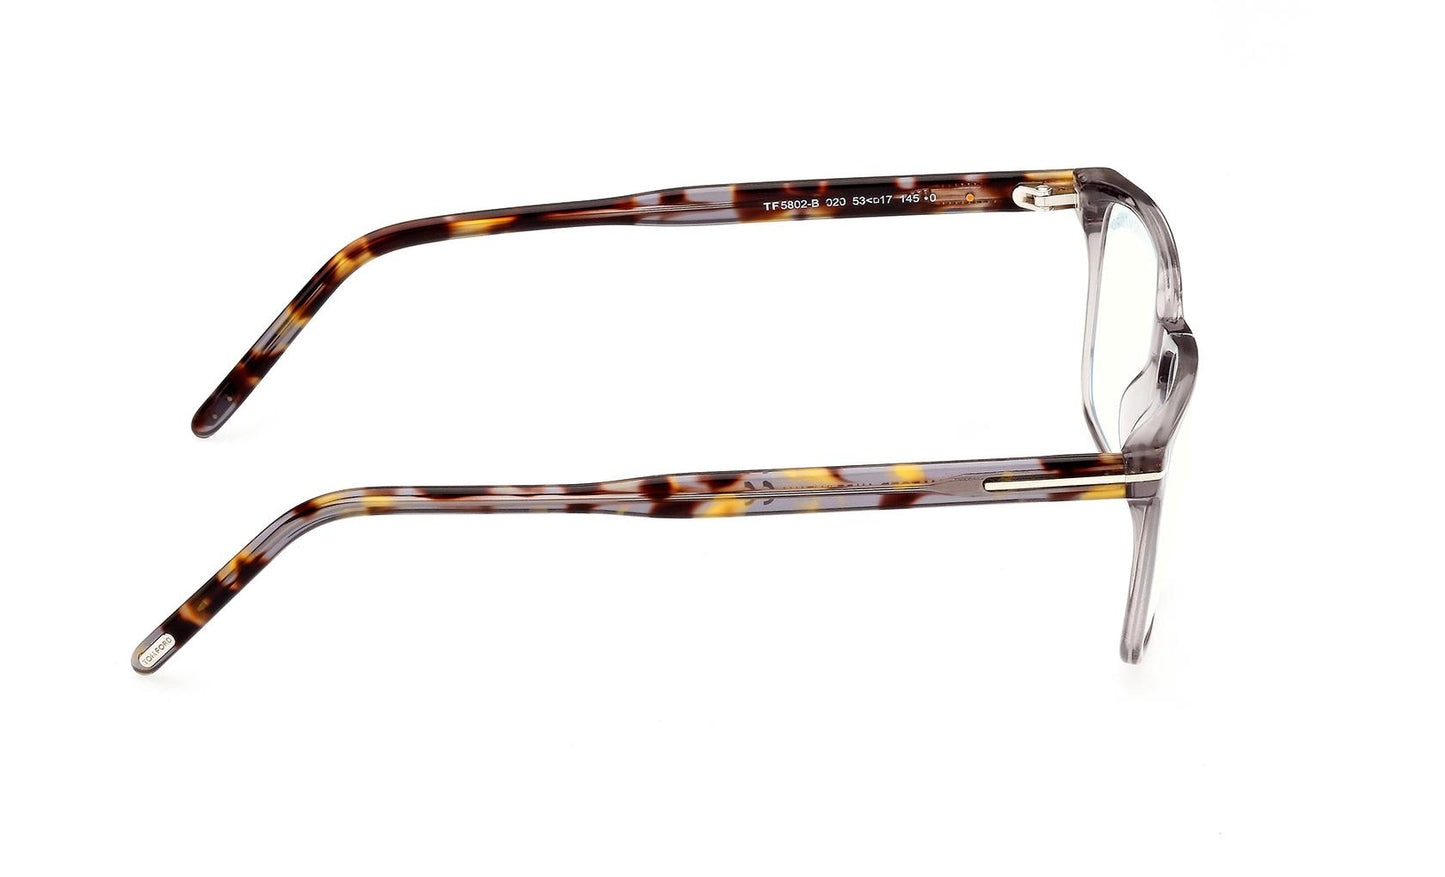 Tom Ford Eyeglasses FT5802/B 020